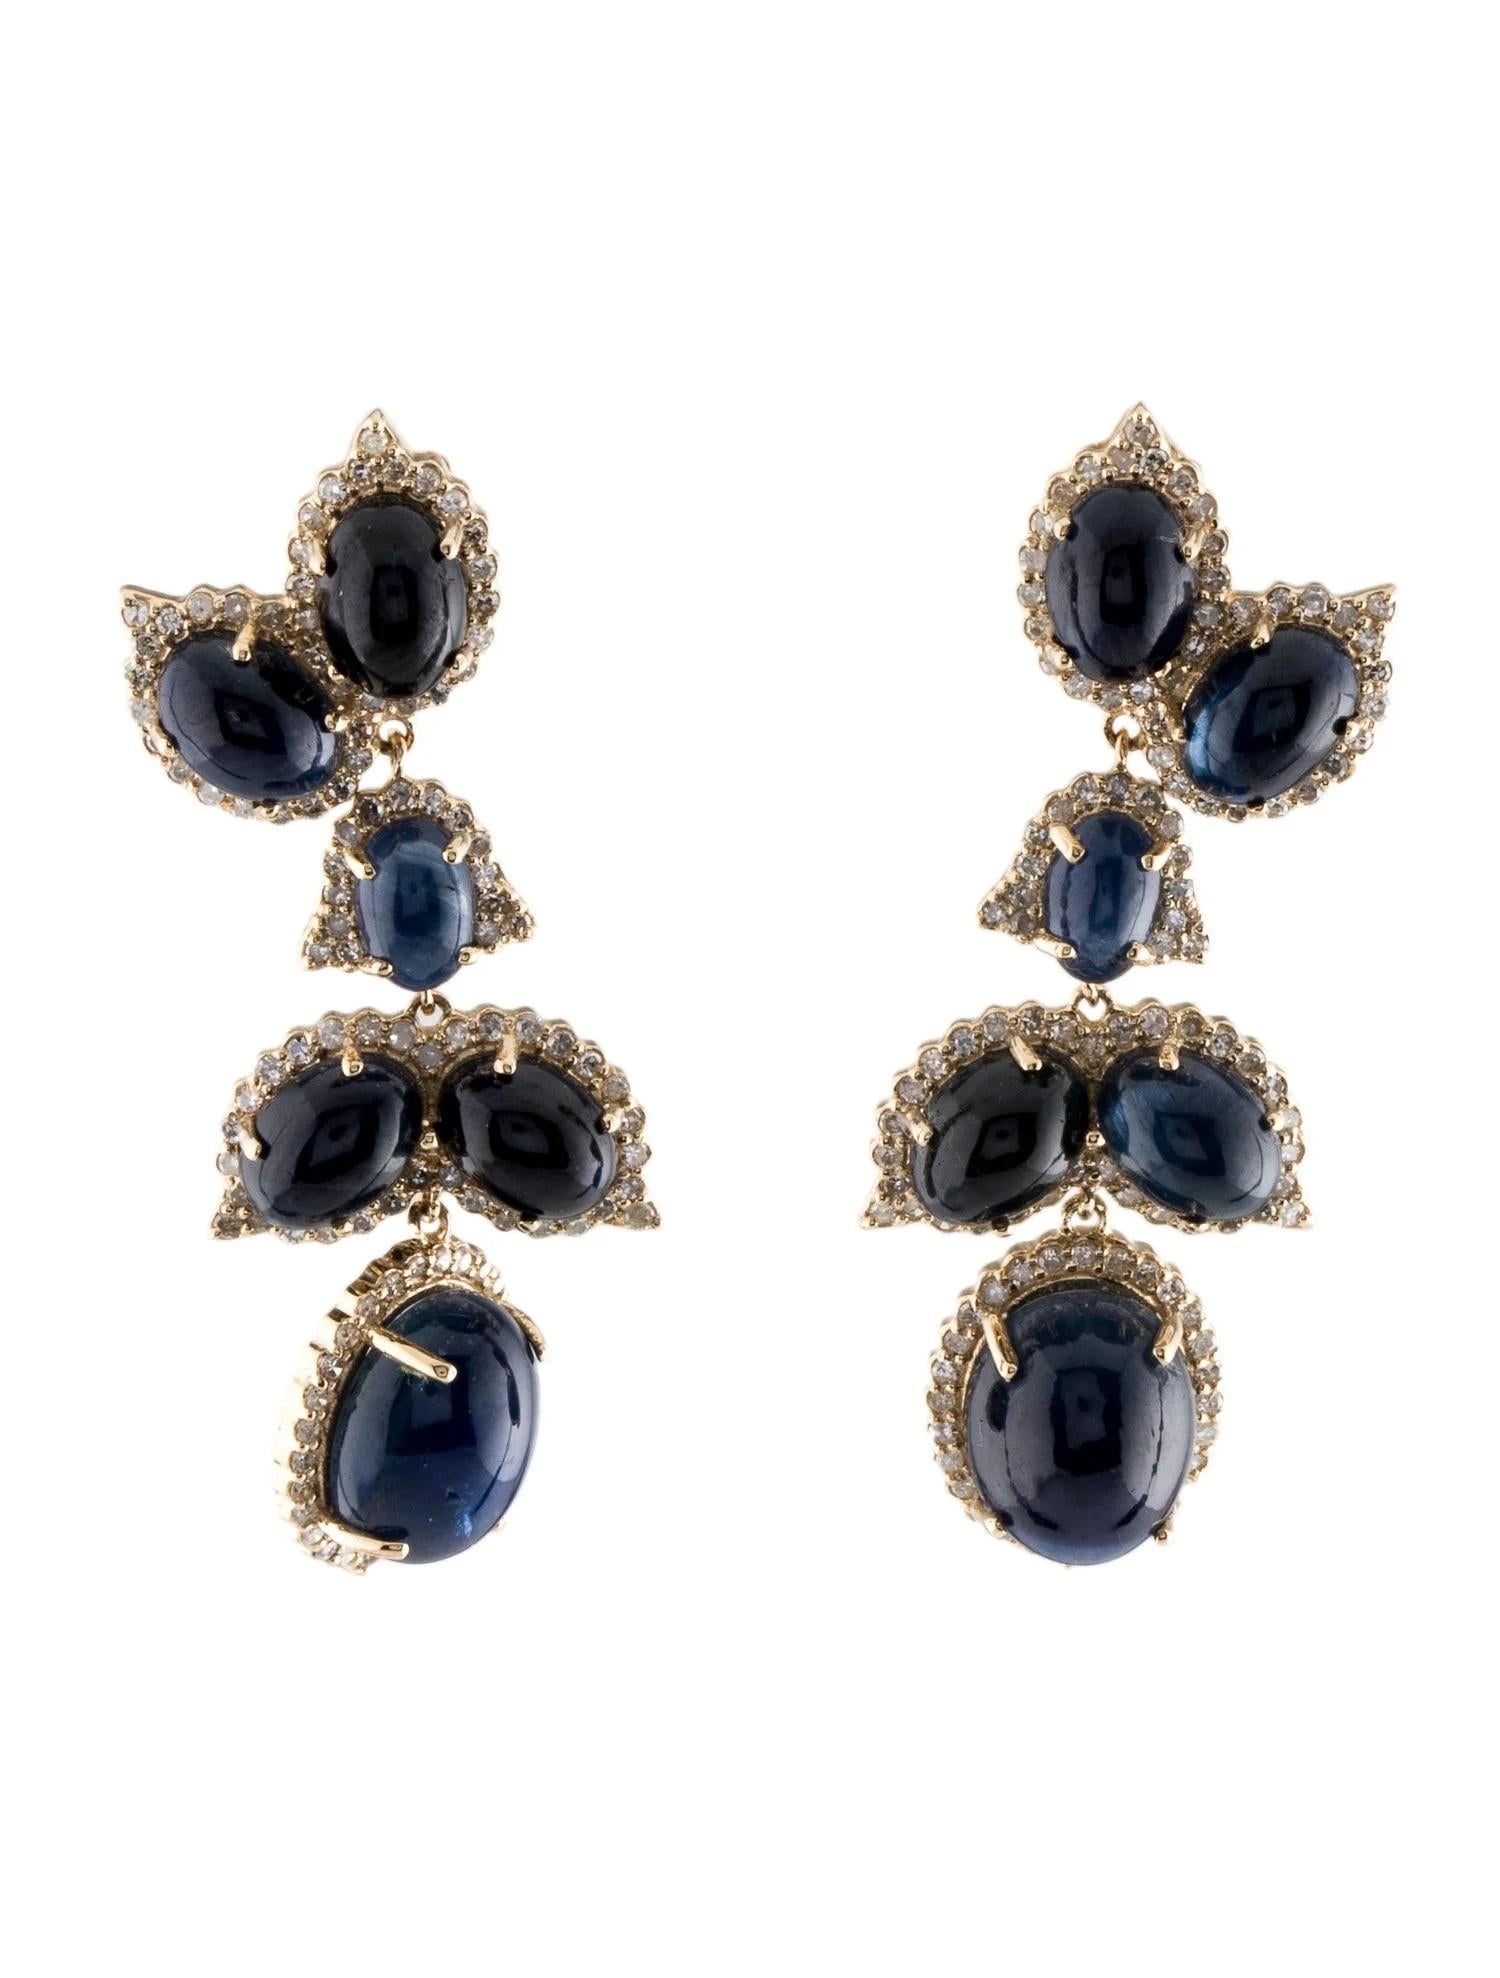 14K Sapphire & Diamond Drop Earrings - Elegant Oval Cabochons For Sale